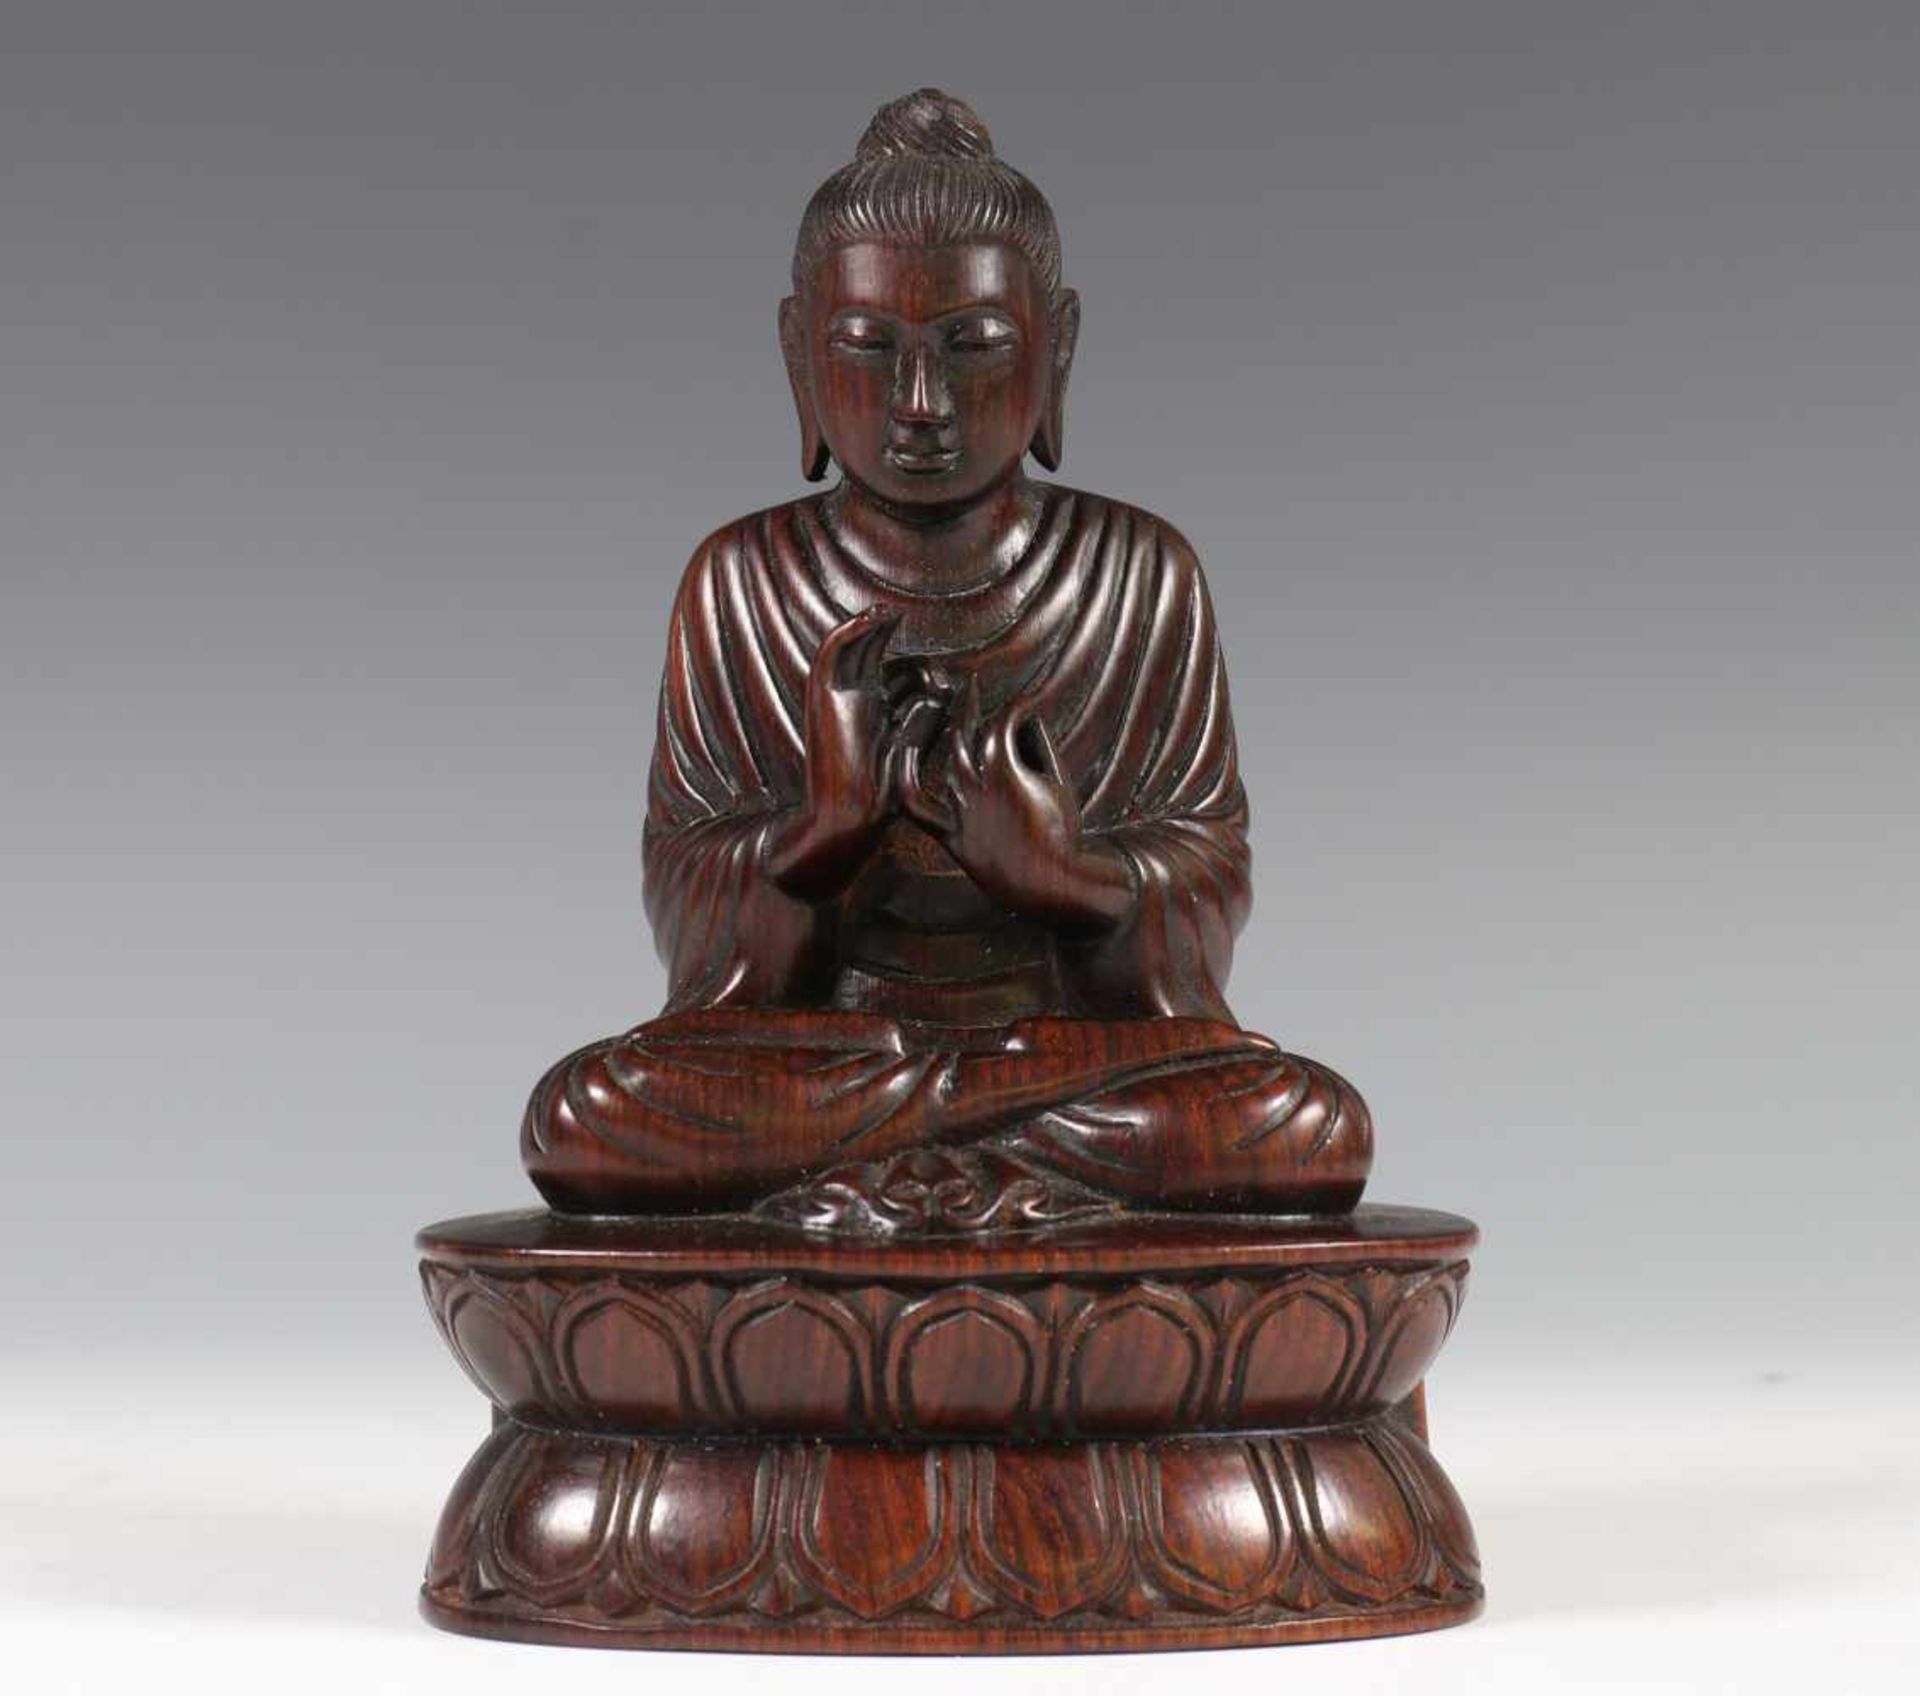 Japan, hardhouten Boeddha, modern,gezeten in lotushouding op een lotustroon, zijn handen in